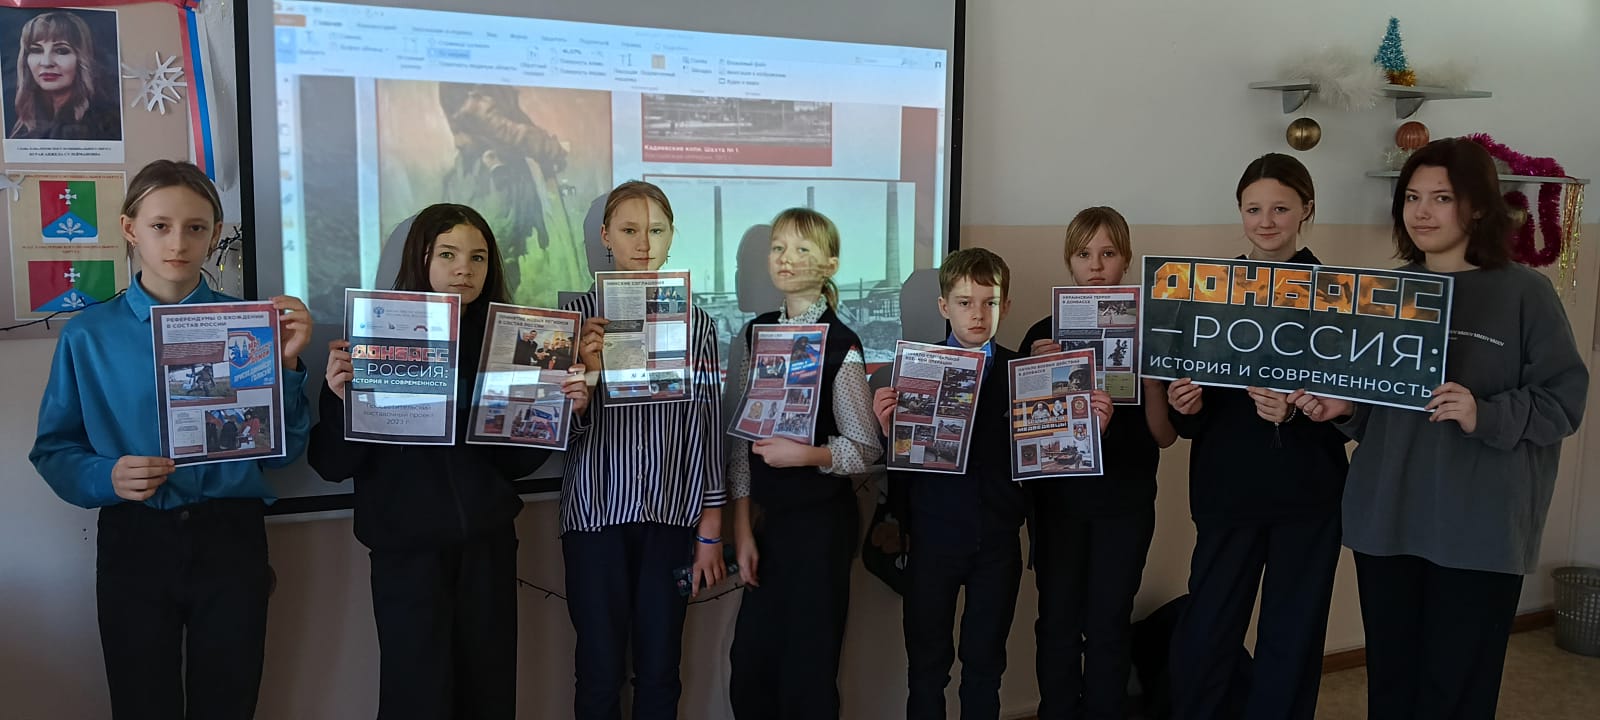 12 января в нашей школе прошел урок-экскурсия &amp;quot;Донбасс - Россия: история и современность.&amp;quot;.